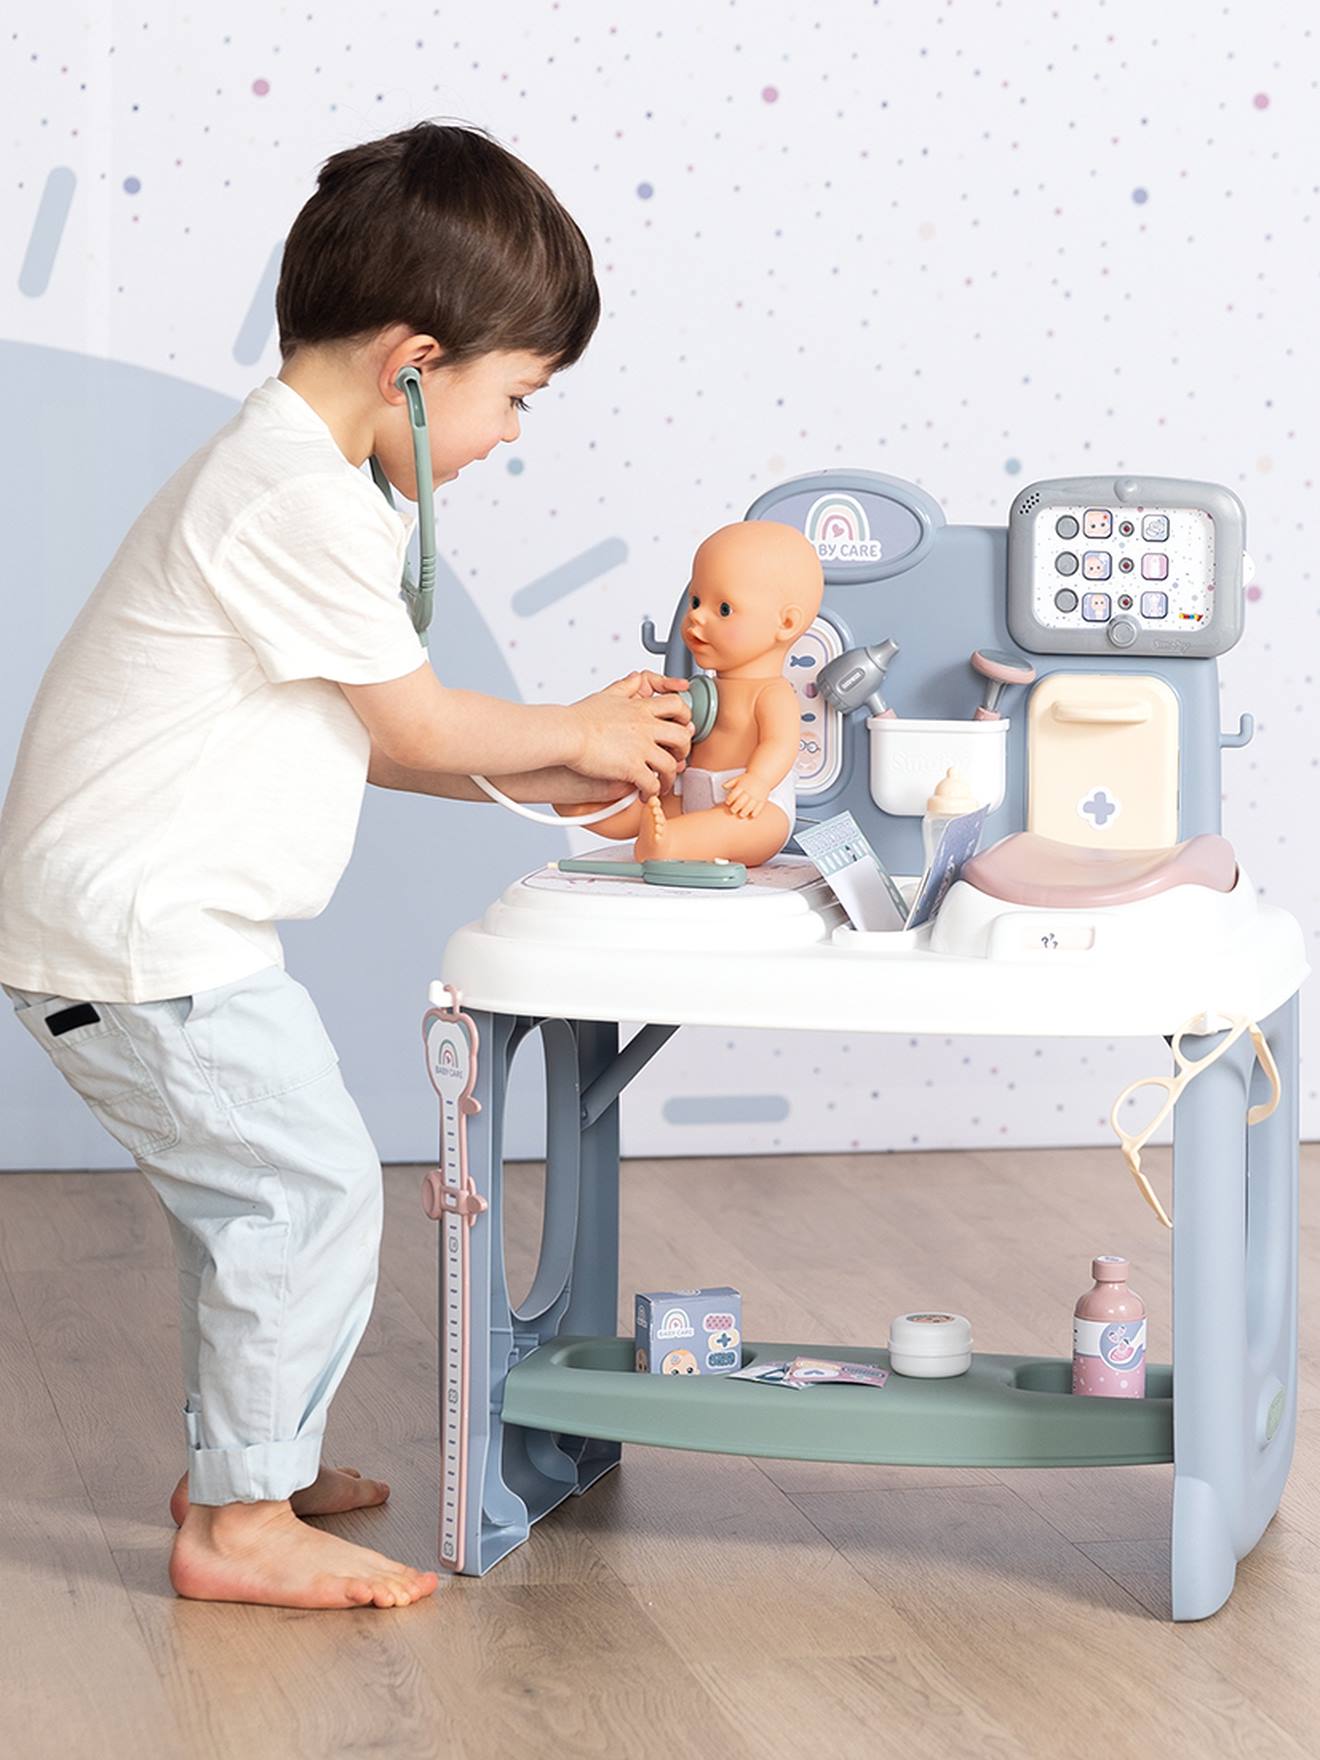 Smoby centre de soins de bébé jouet avec accessoires - La Poste